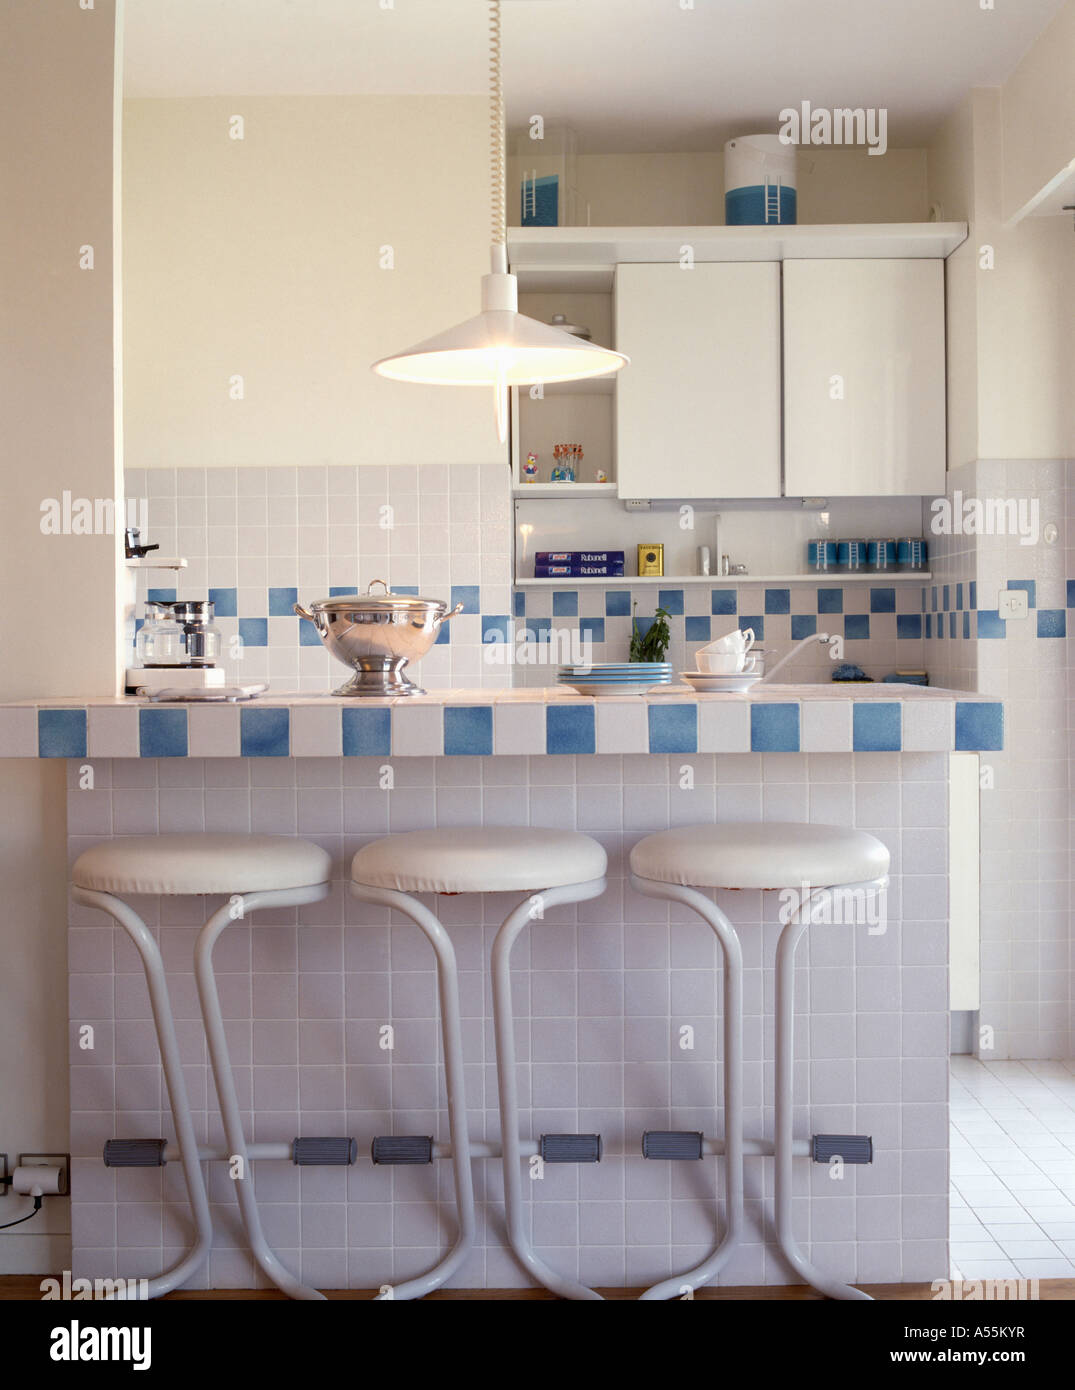 Cocina moderna con heces de color blanco en la barra de desayuno, con azulejos  de color blanco y azul Fotografía de stock - Alamy